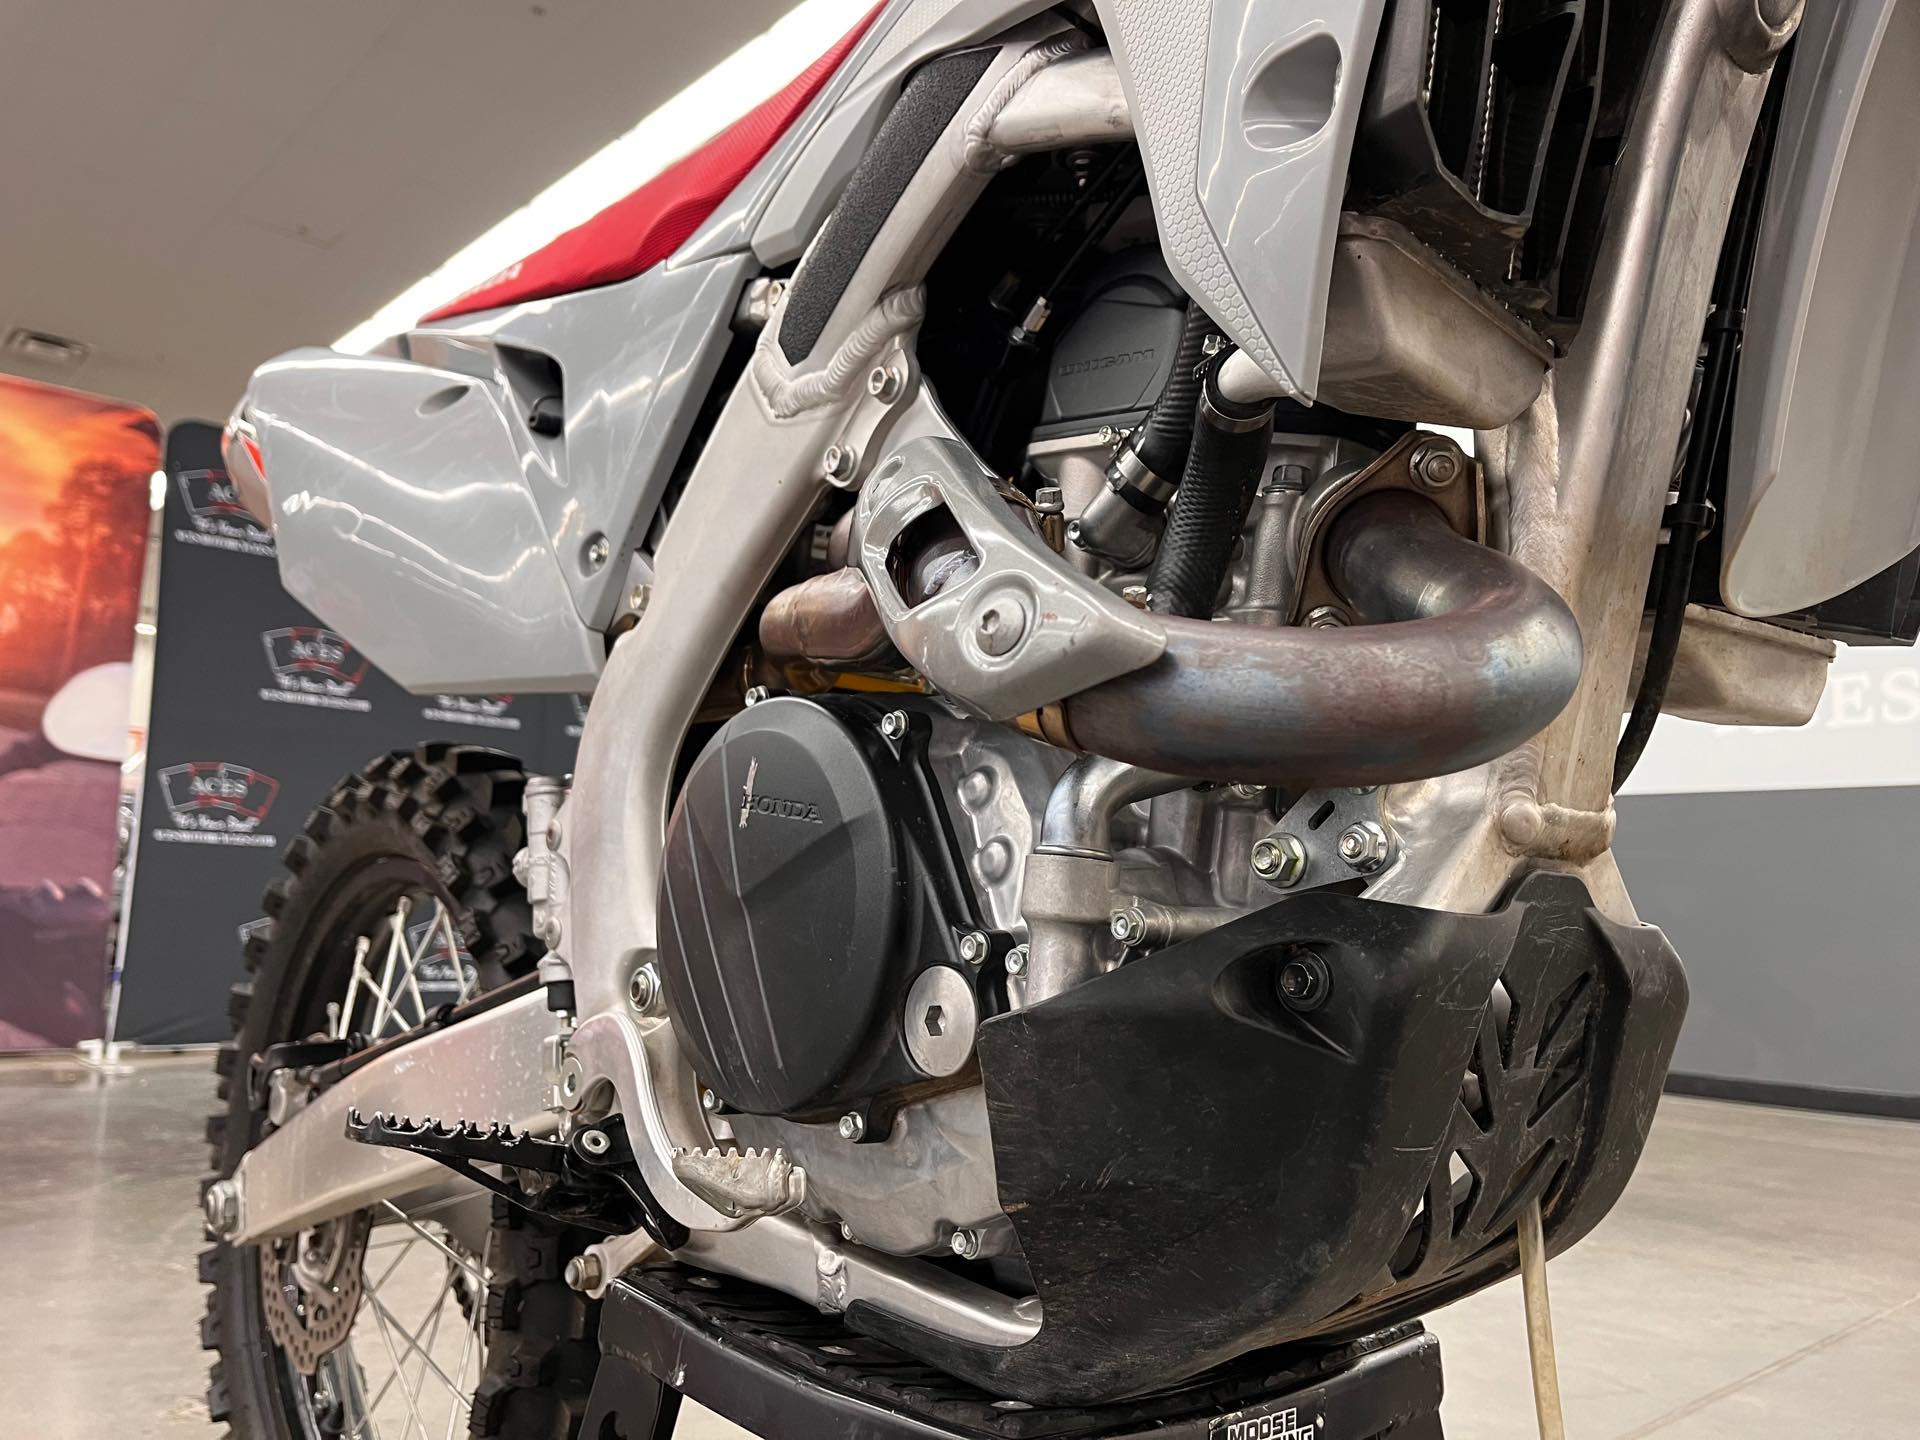 2020 Honda CRF 450R at Aces Motorcycles - Denver